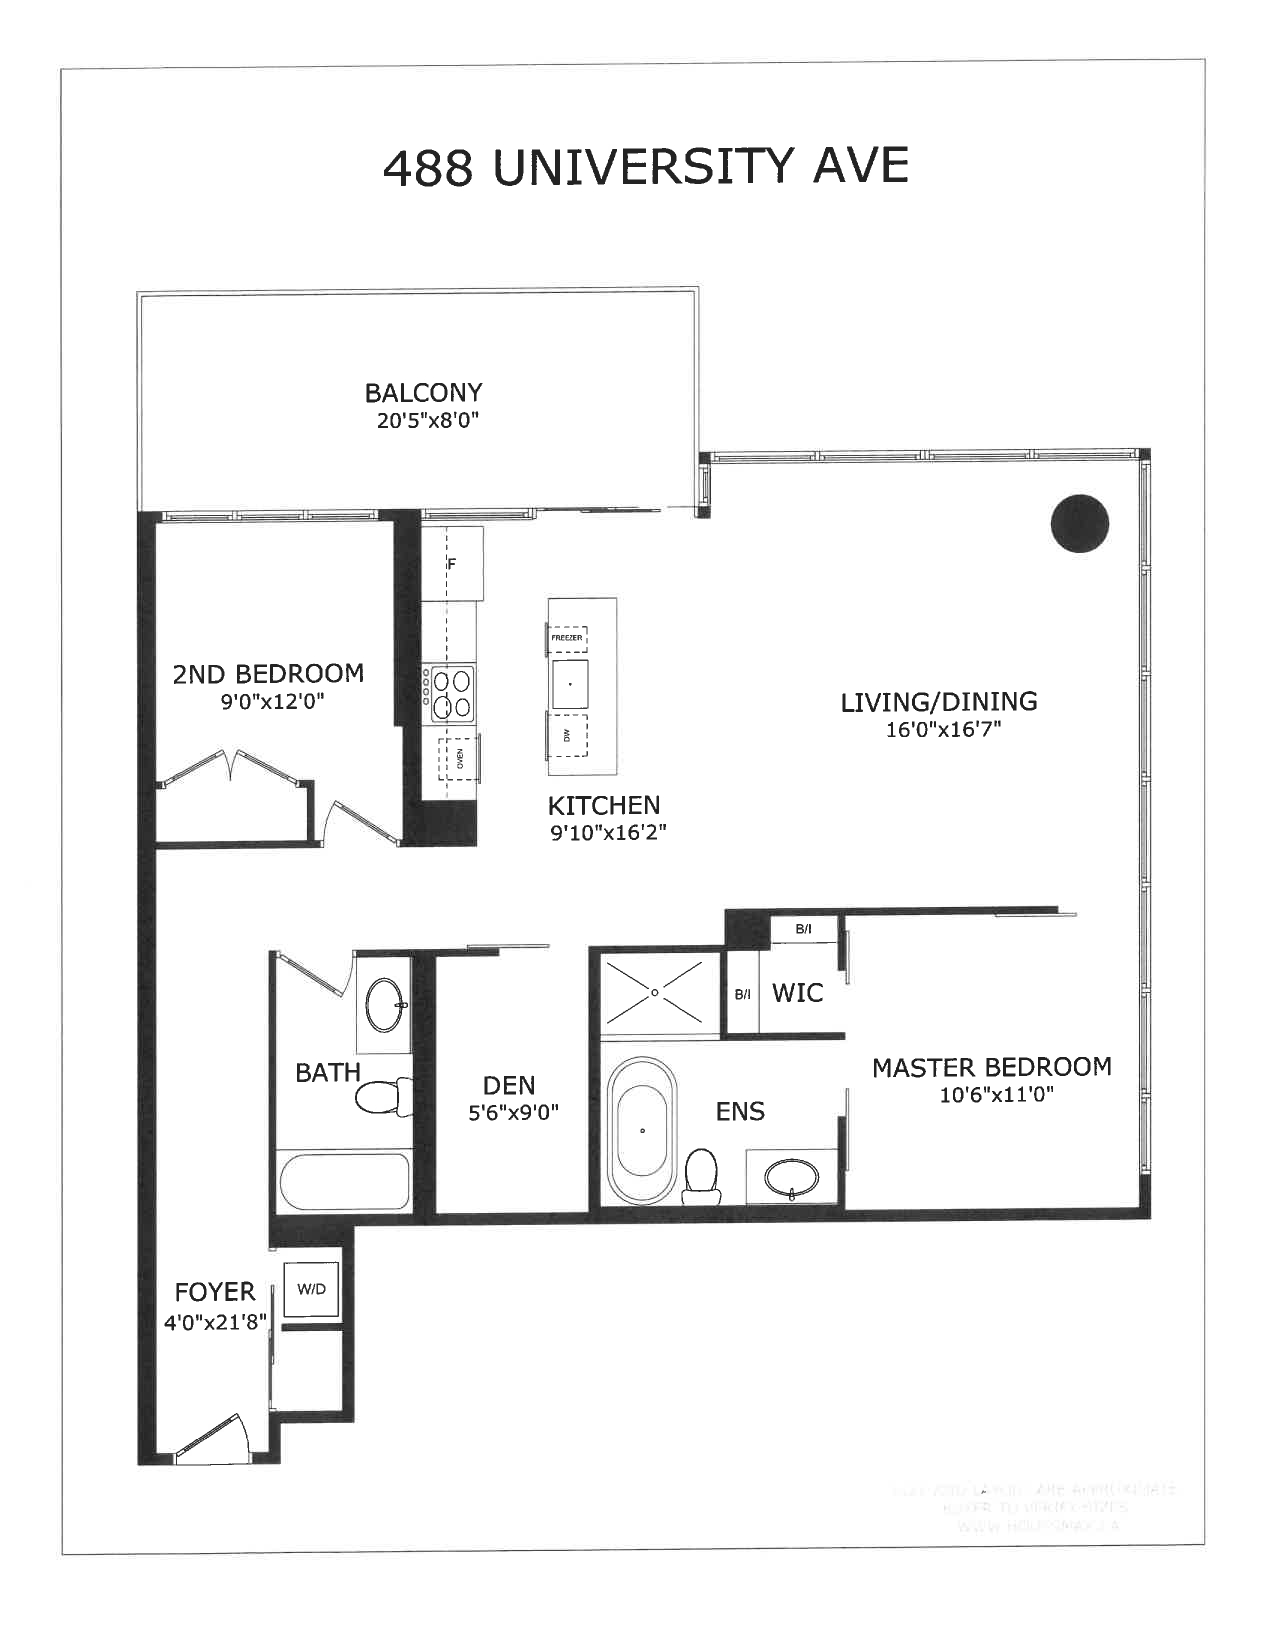 488 University Ave Unit 2710 Floor Plans